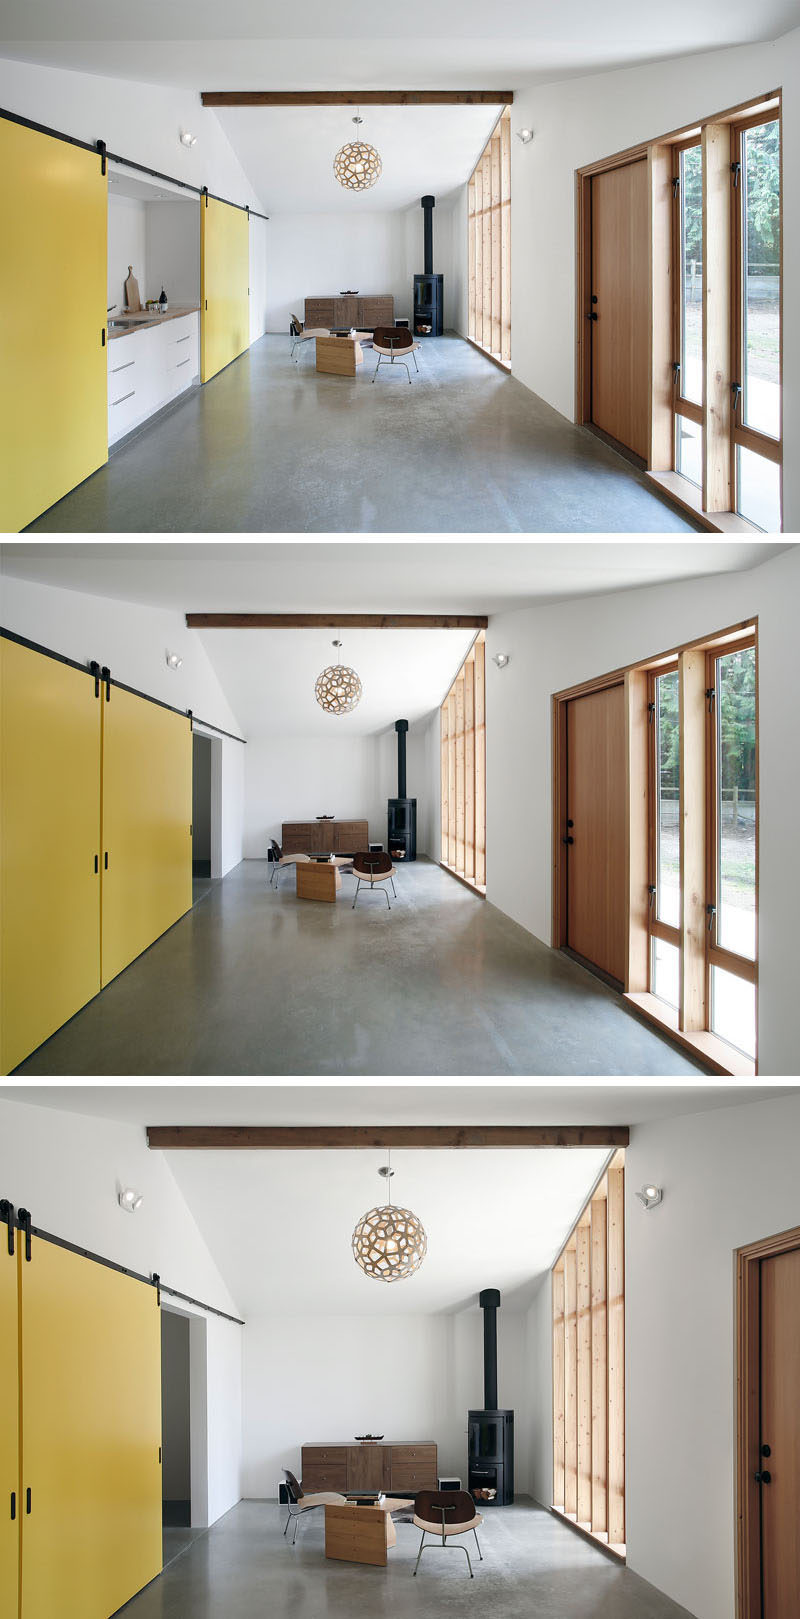 Веселые ярко-желтые раздвижные двери сарая проходят по всей длине этого небольшого дома и скрывают спальню и кухню, а также добавляют красок в простой интерьер.